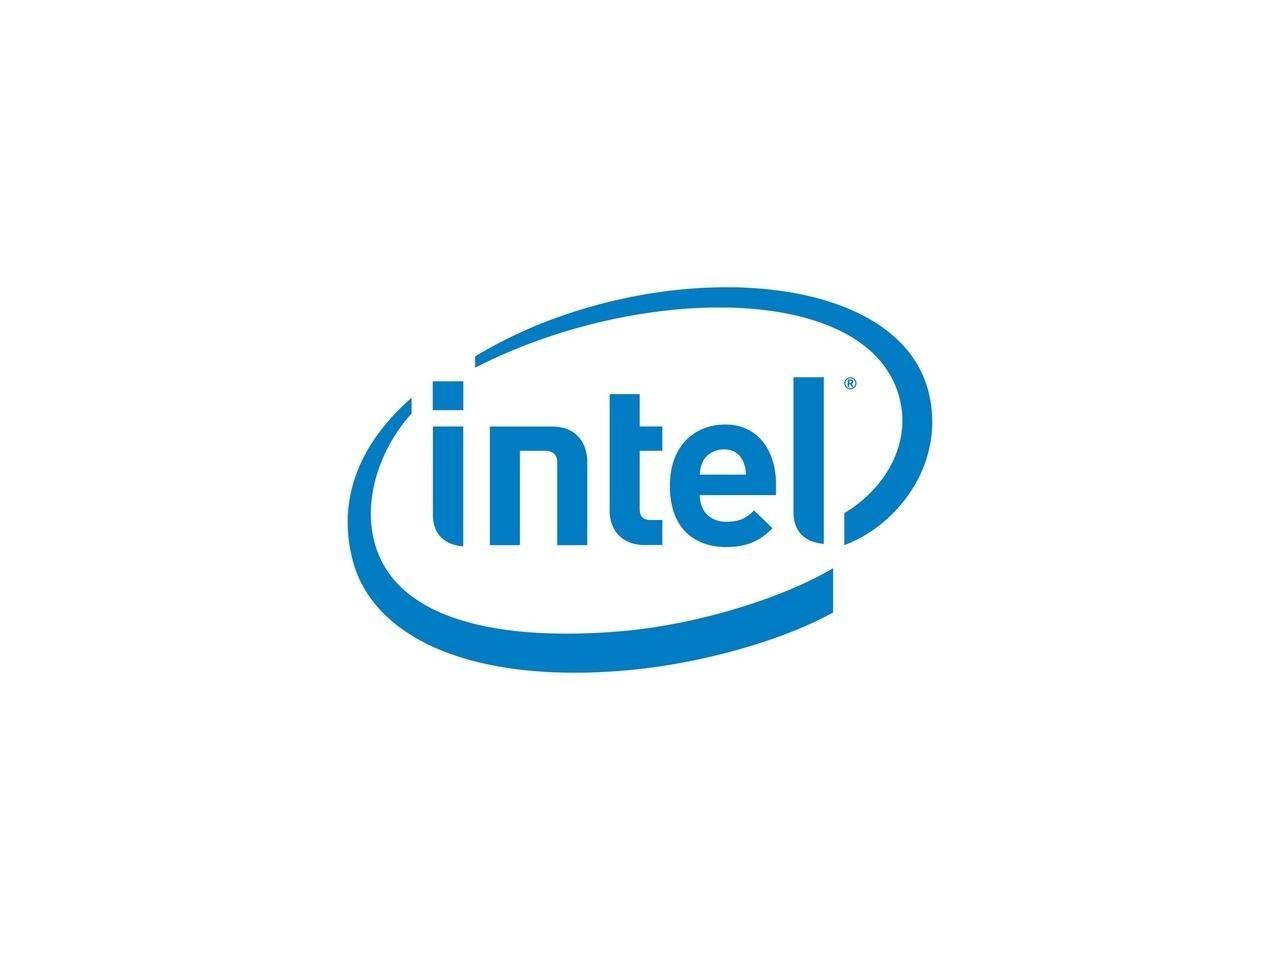 Intel Dc P4510 2 Tb Solid State Drive - Pci Express (Pci Express 3.0 X4) - 2.5" Drive - 2672.64 Tb (Tbw) - Internal